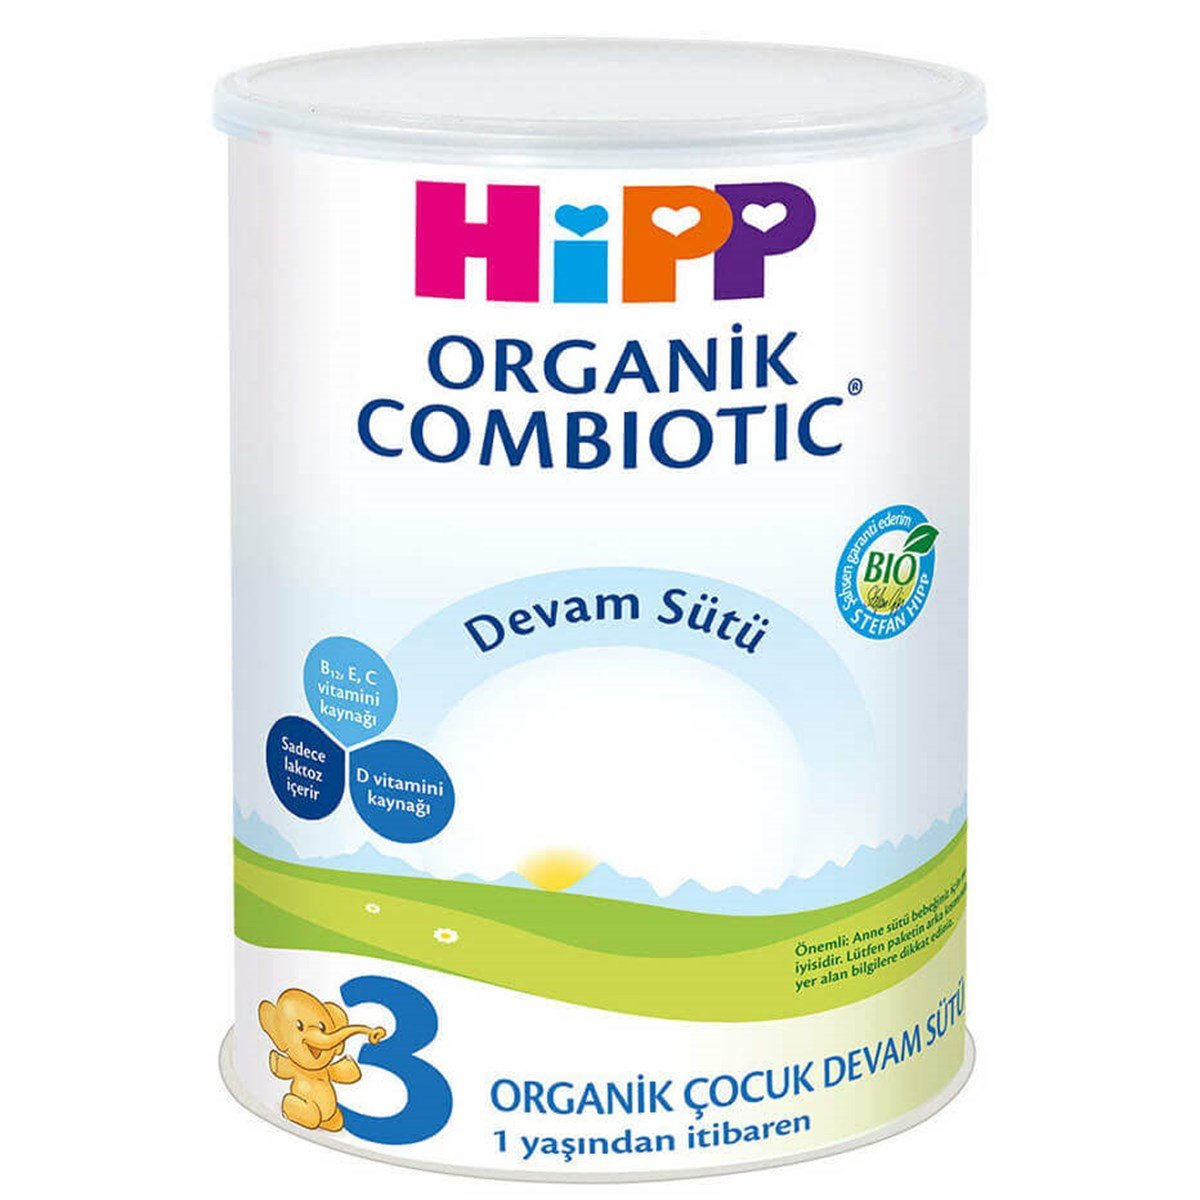 HİPP No:3 MAMA 350g Hipp Organik Combiotik Devam Sütü